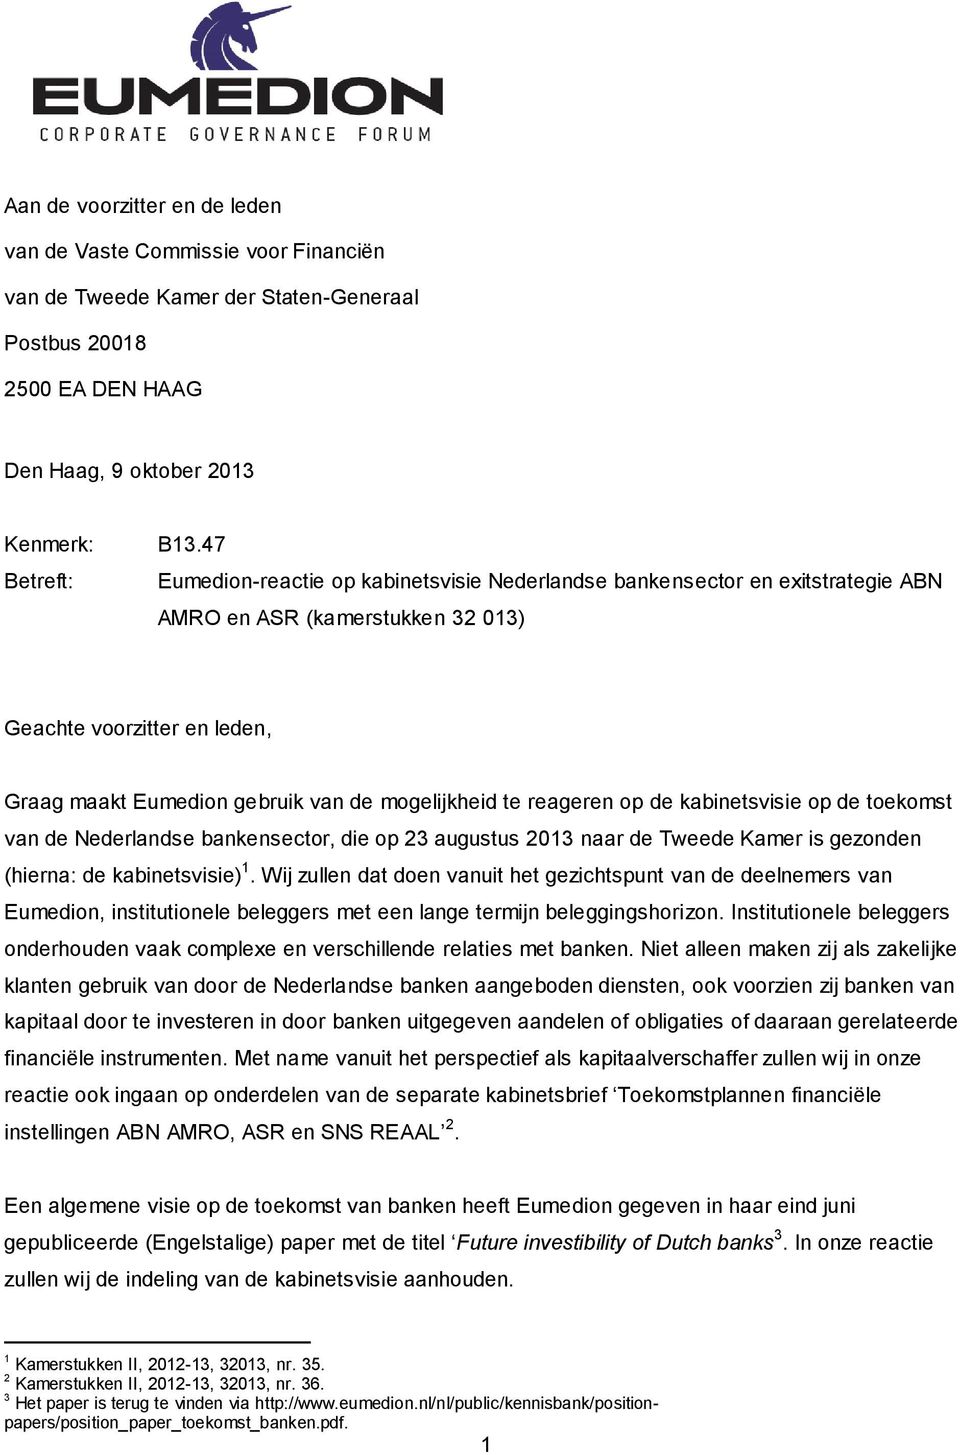 mogelijkheid te reageren op de kabinetsvisie op de toekomst van de Nederlandse bankensector, die op 23 augustus 2013 naar de Tweede Kamer is gezonden (hierna: de kabinetsvisie) 1.